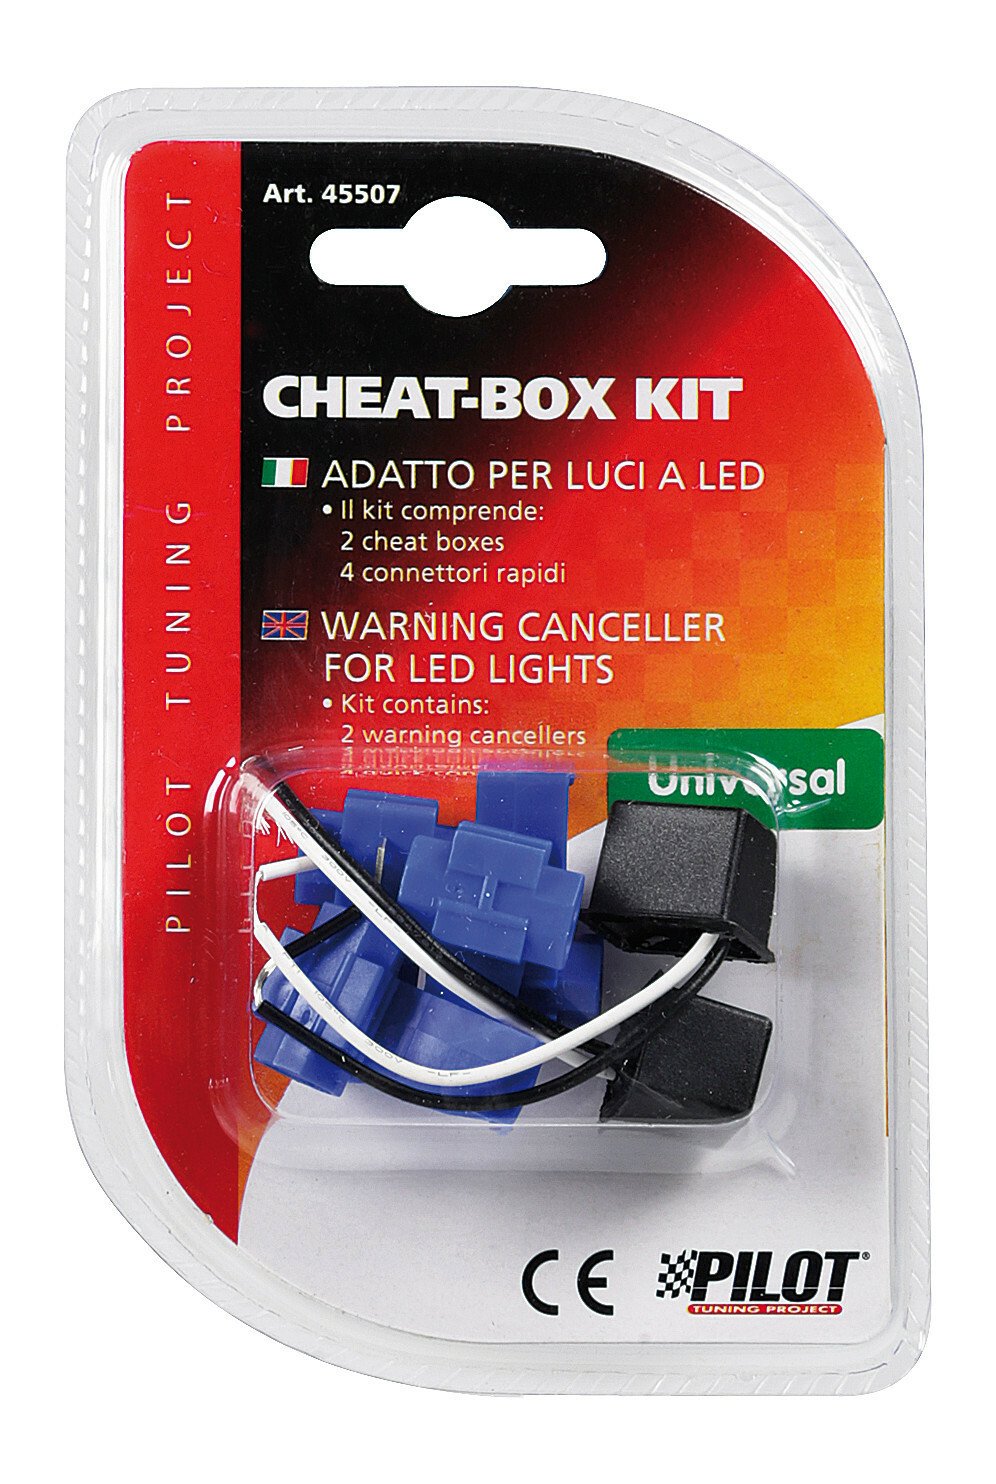 Cheat-Box kit for Led lamps, 12V thumb